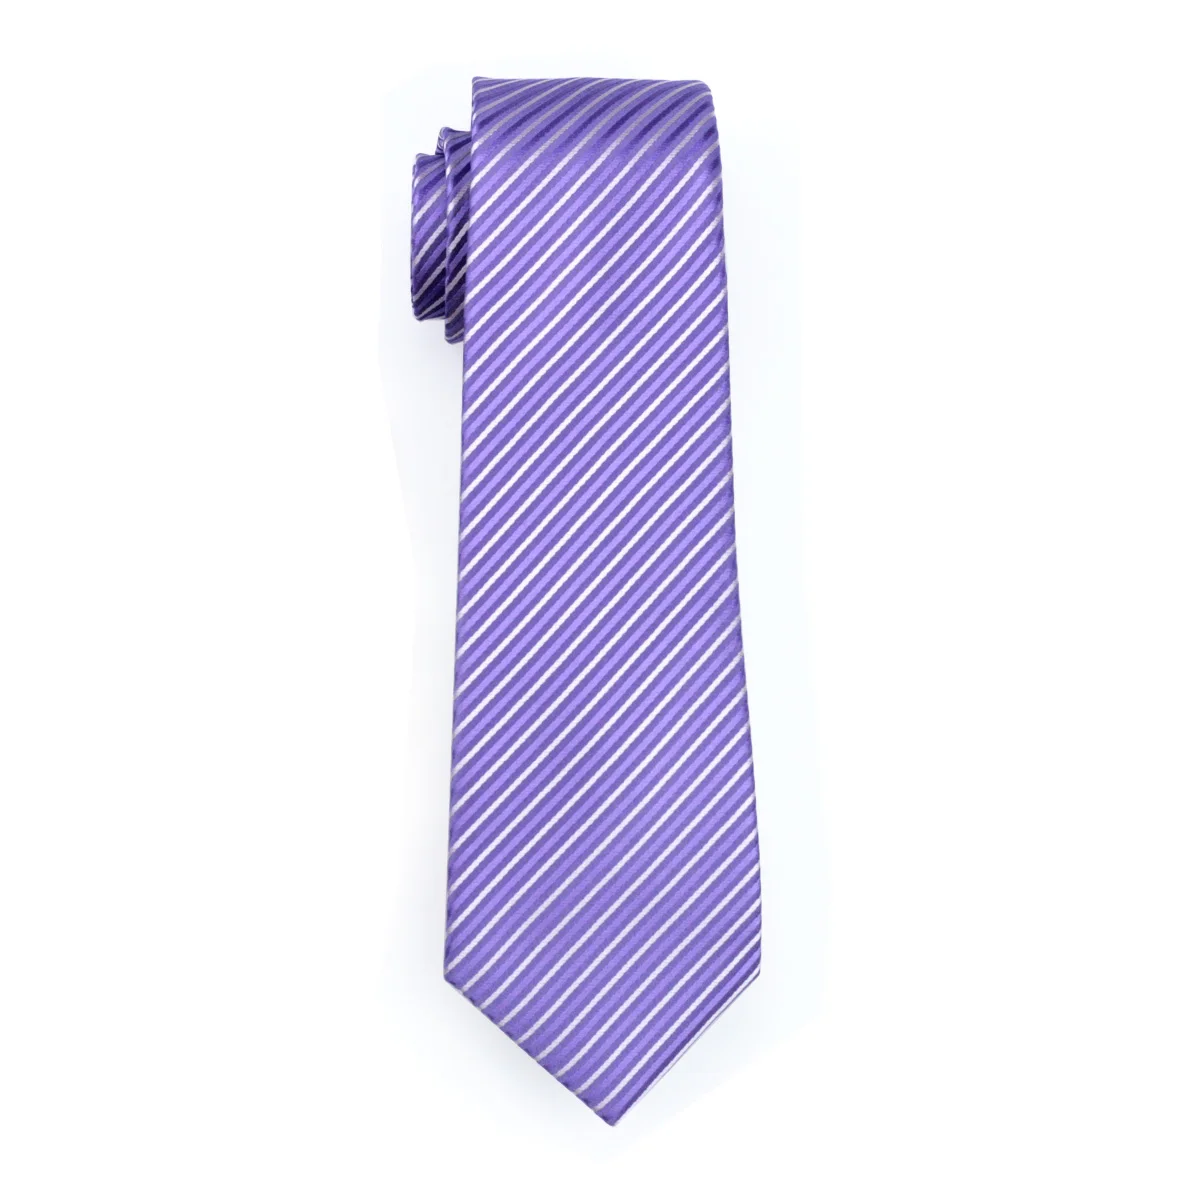 Fa-313 Мужские Галстук Фиолетовый в полоску 100% шелк жаккард галстук Ханки Запонки Набор Бизнес Свадебная вечеринка Галстуки для Для мужчин;